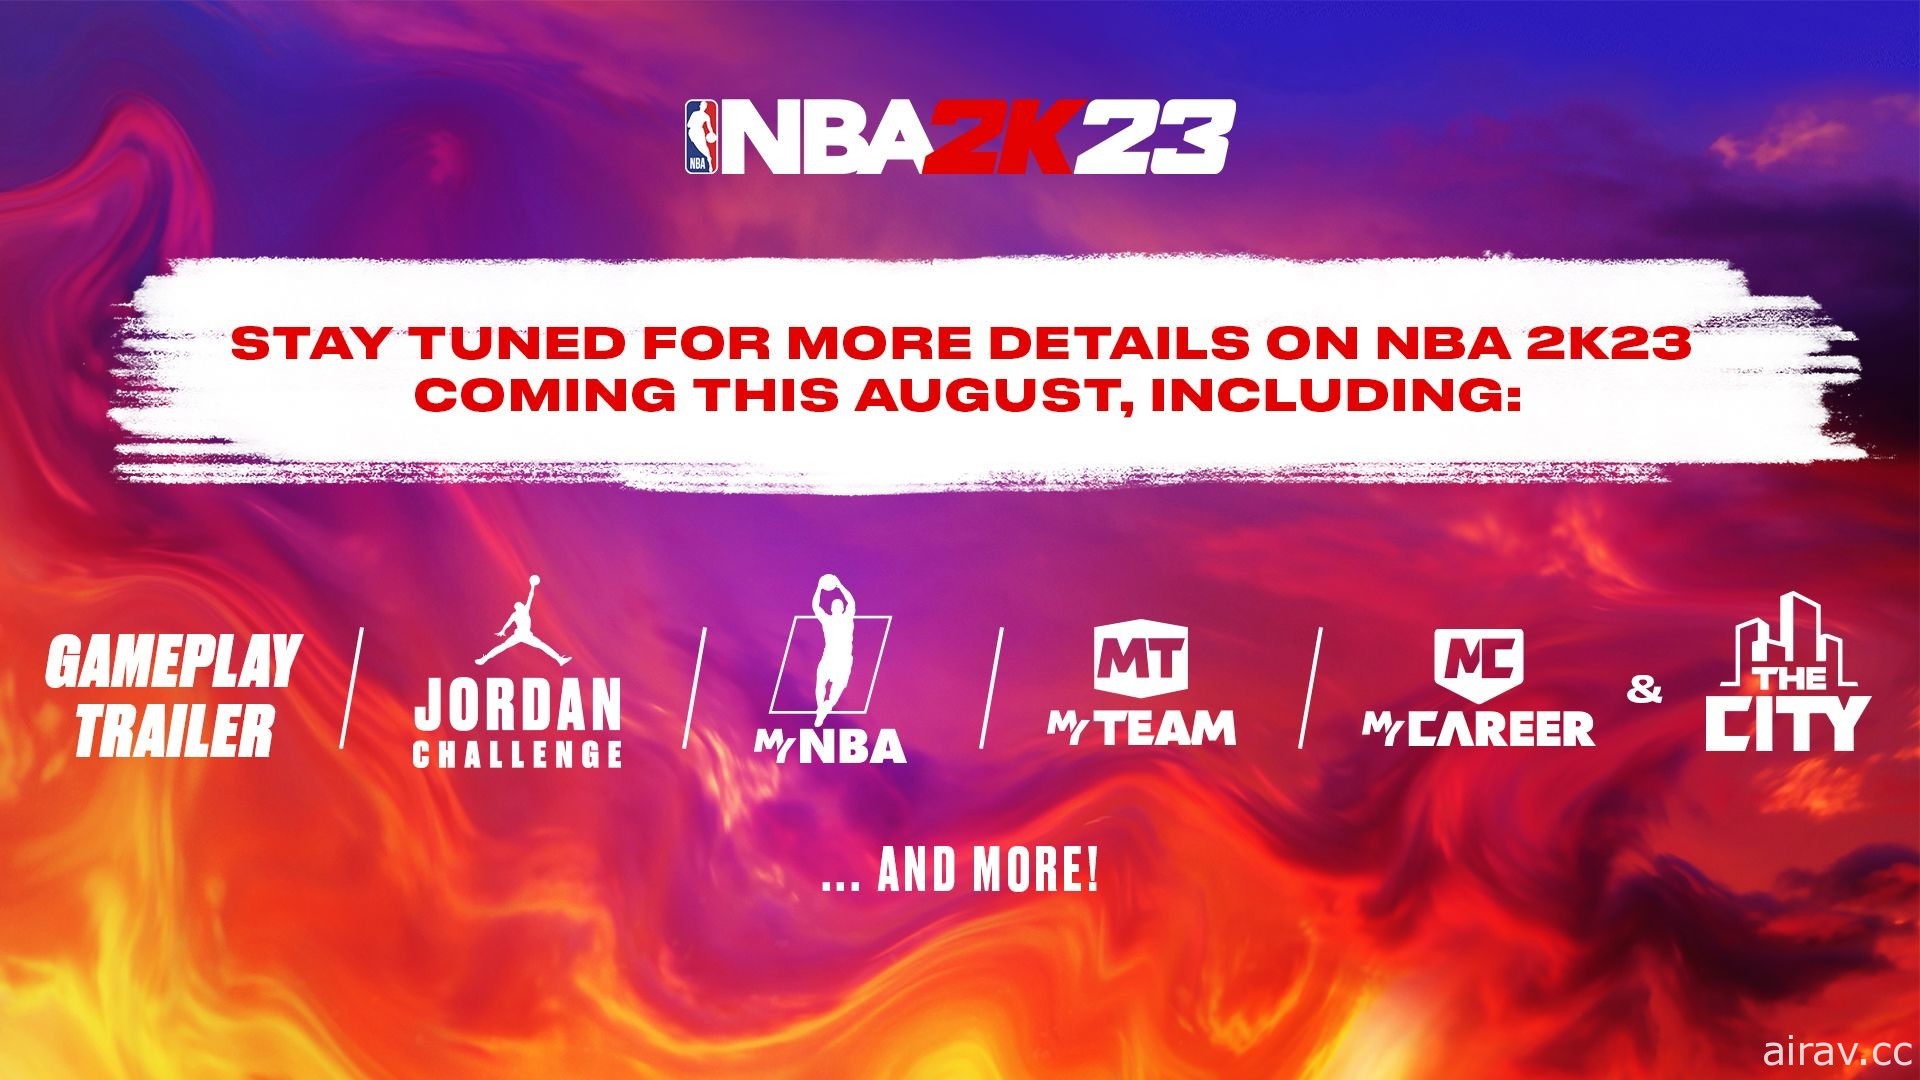 共創輝煌！NBA 全明星球員德文·布克出任《NBA 2K23》封面運動員